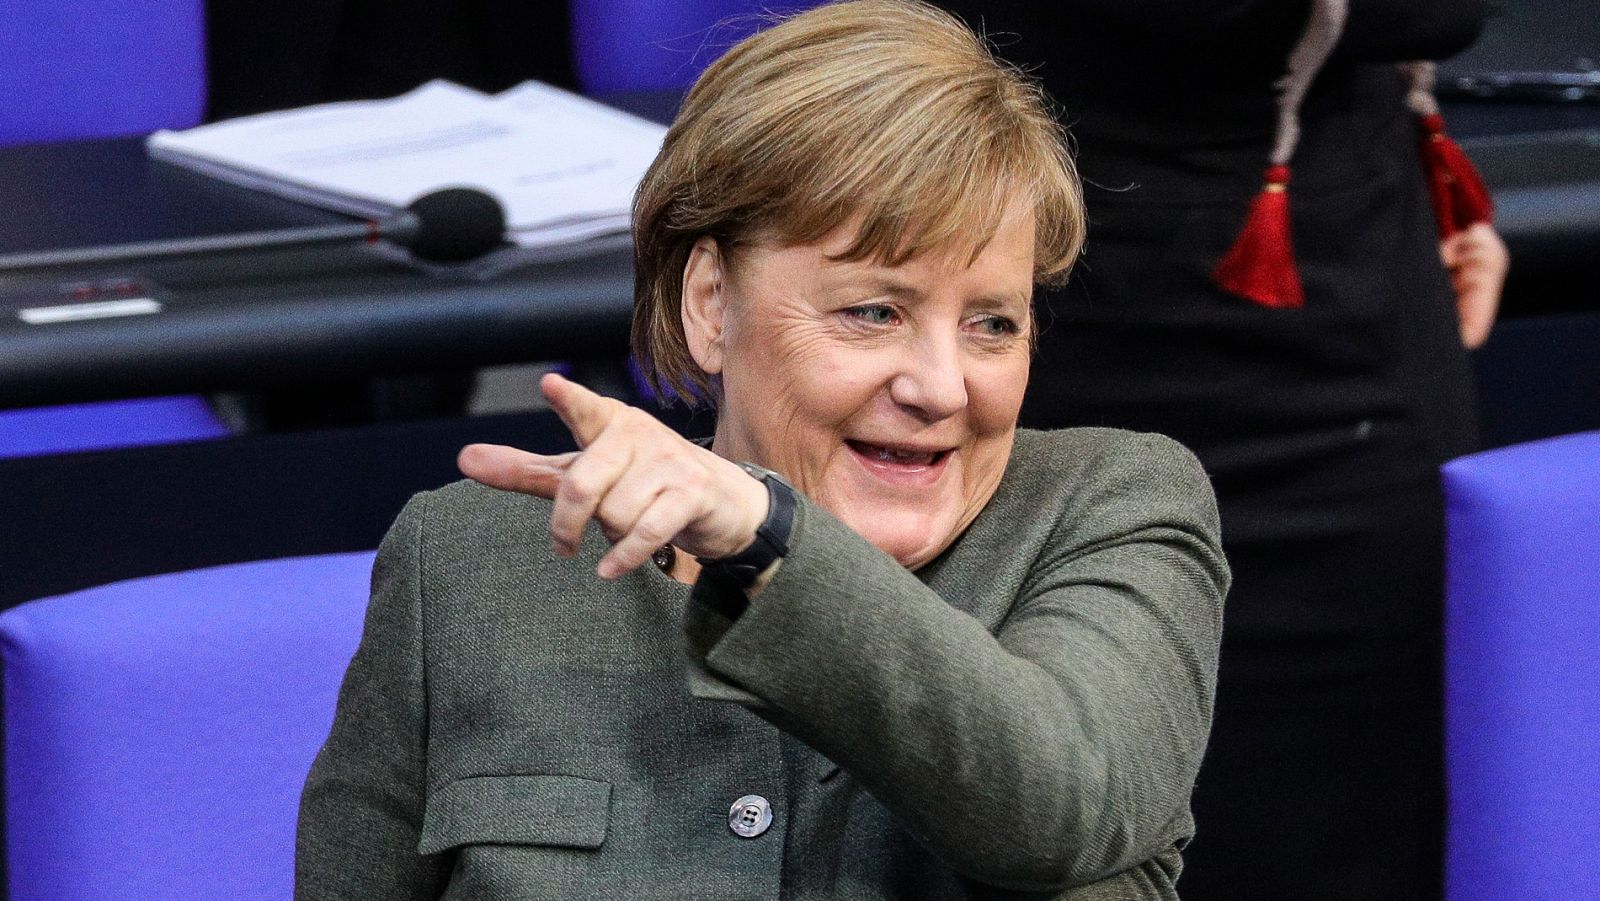 La política sigue siendo un mundo de hombres pese a mujeres como Merkel o Von der Leyen